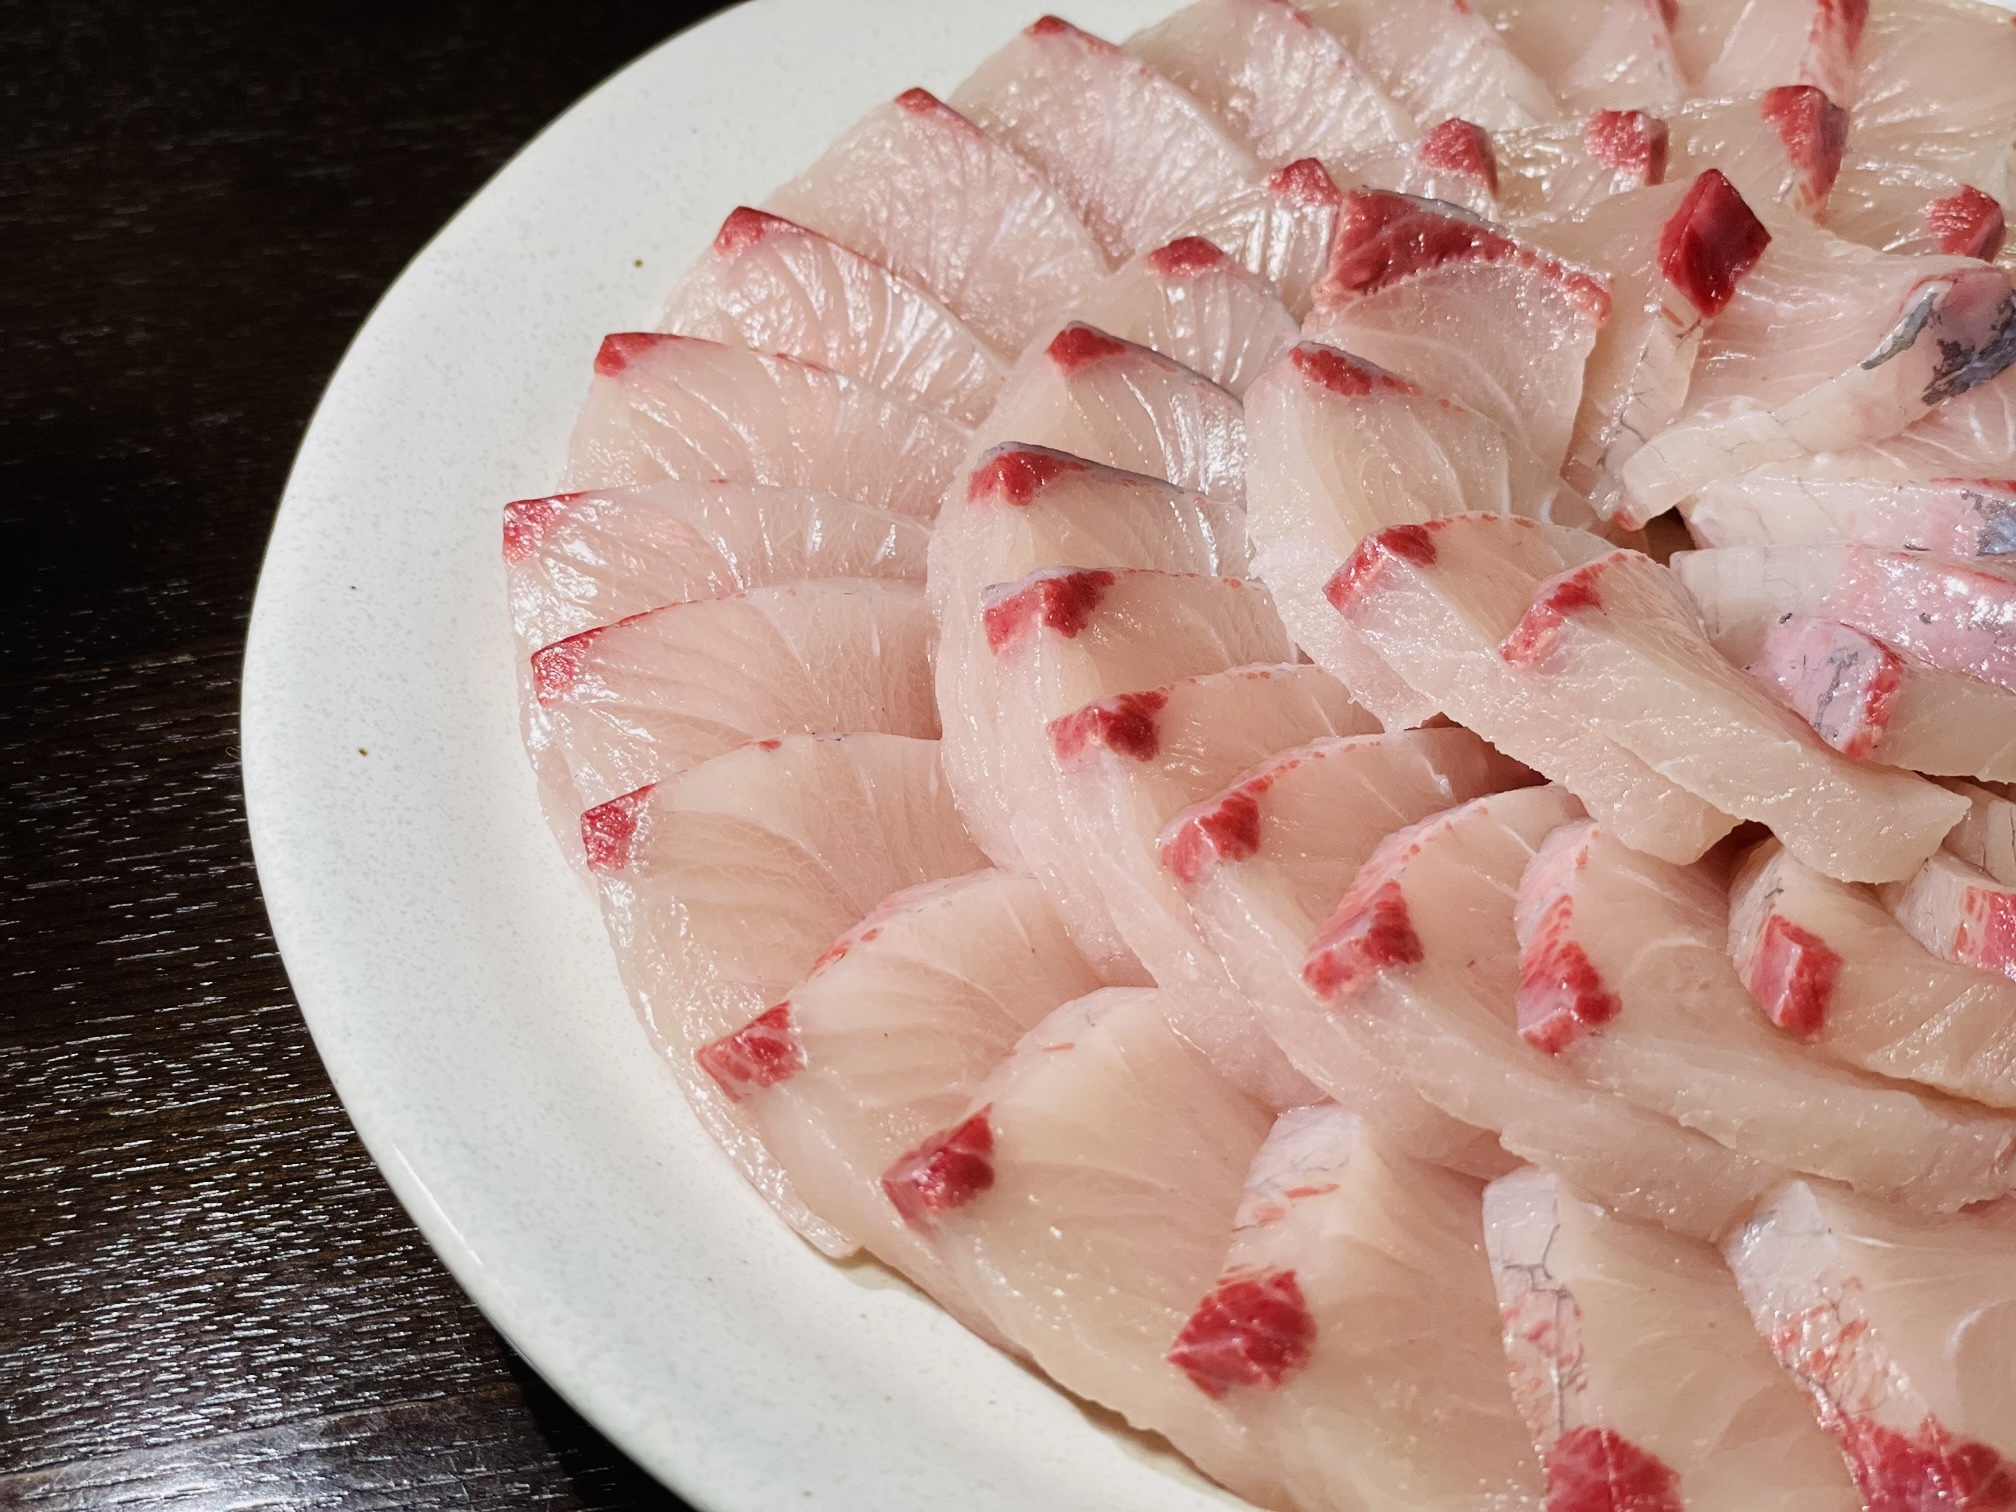 魚介類 セット・詰め合わせ 百年漁師の鰤と真鯛お刺身食べ比べセット 産地直送